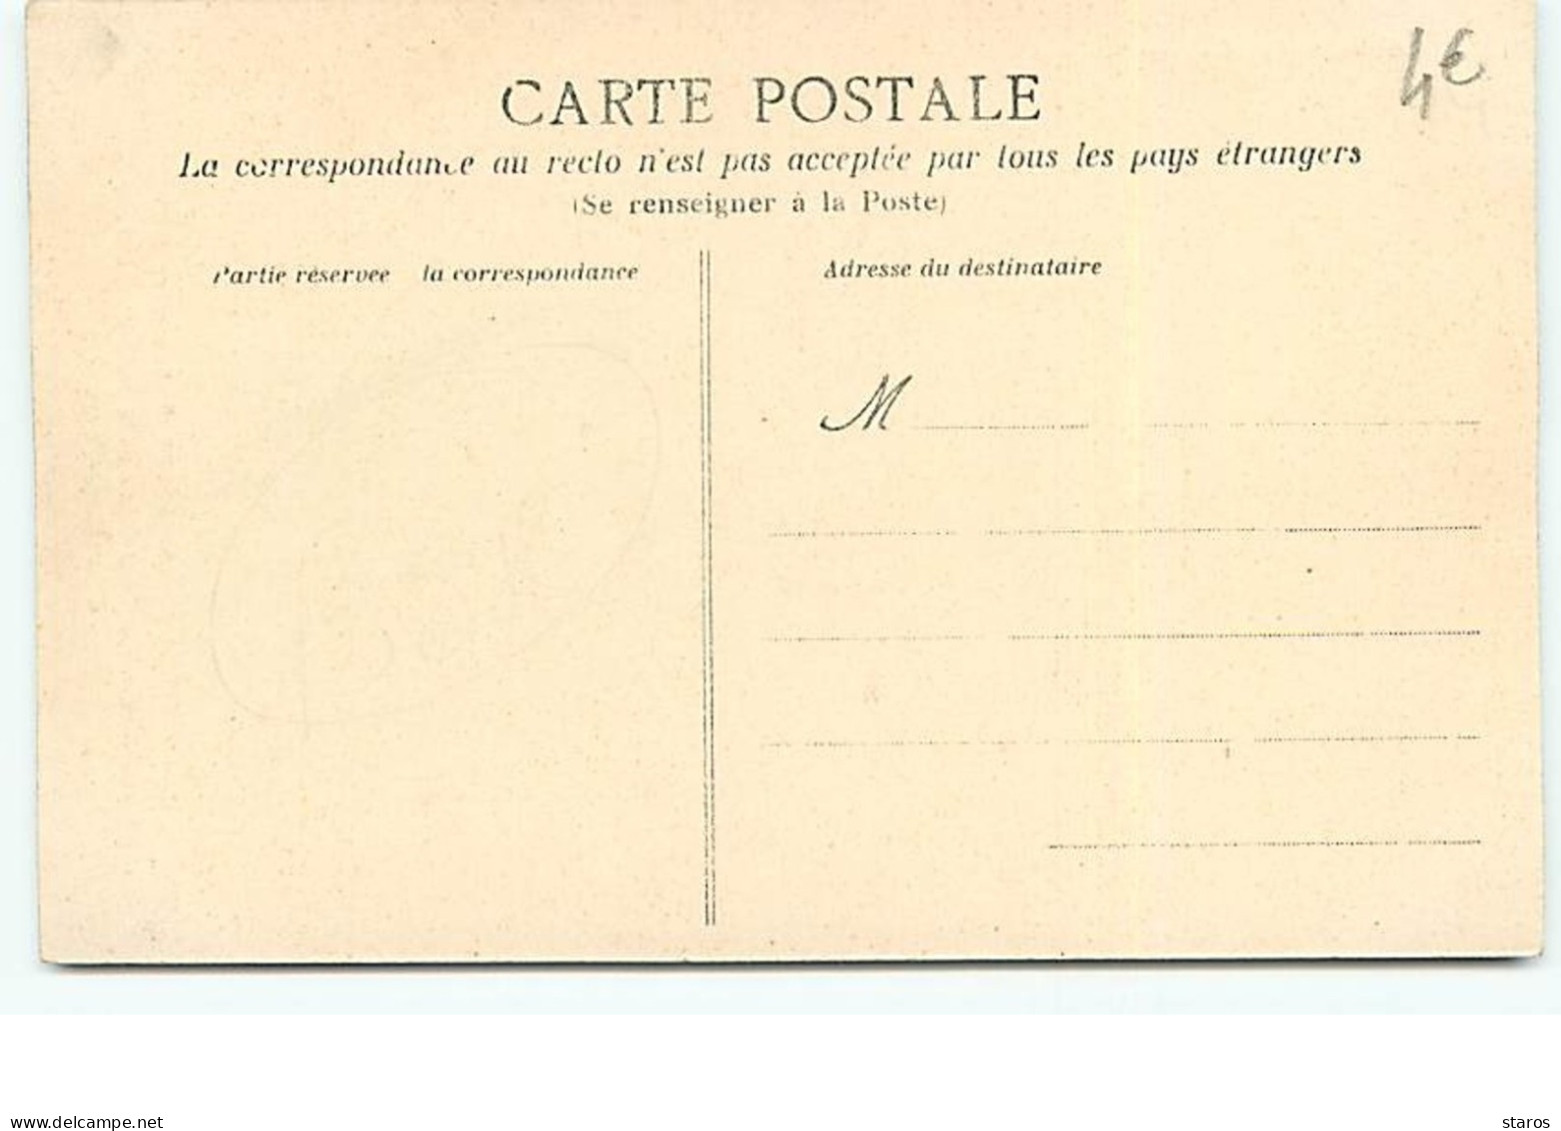 Les Inventaires à NANTES (27 Novembre 1906) - La Cathédrale - Brèche Et Débris De La Porte Donnant ... - Nantes